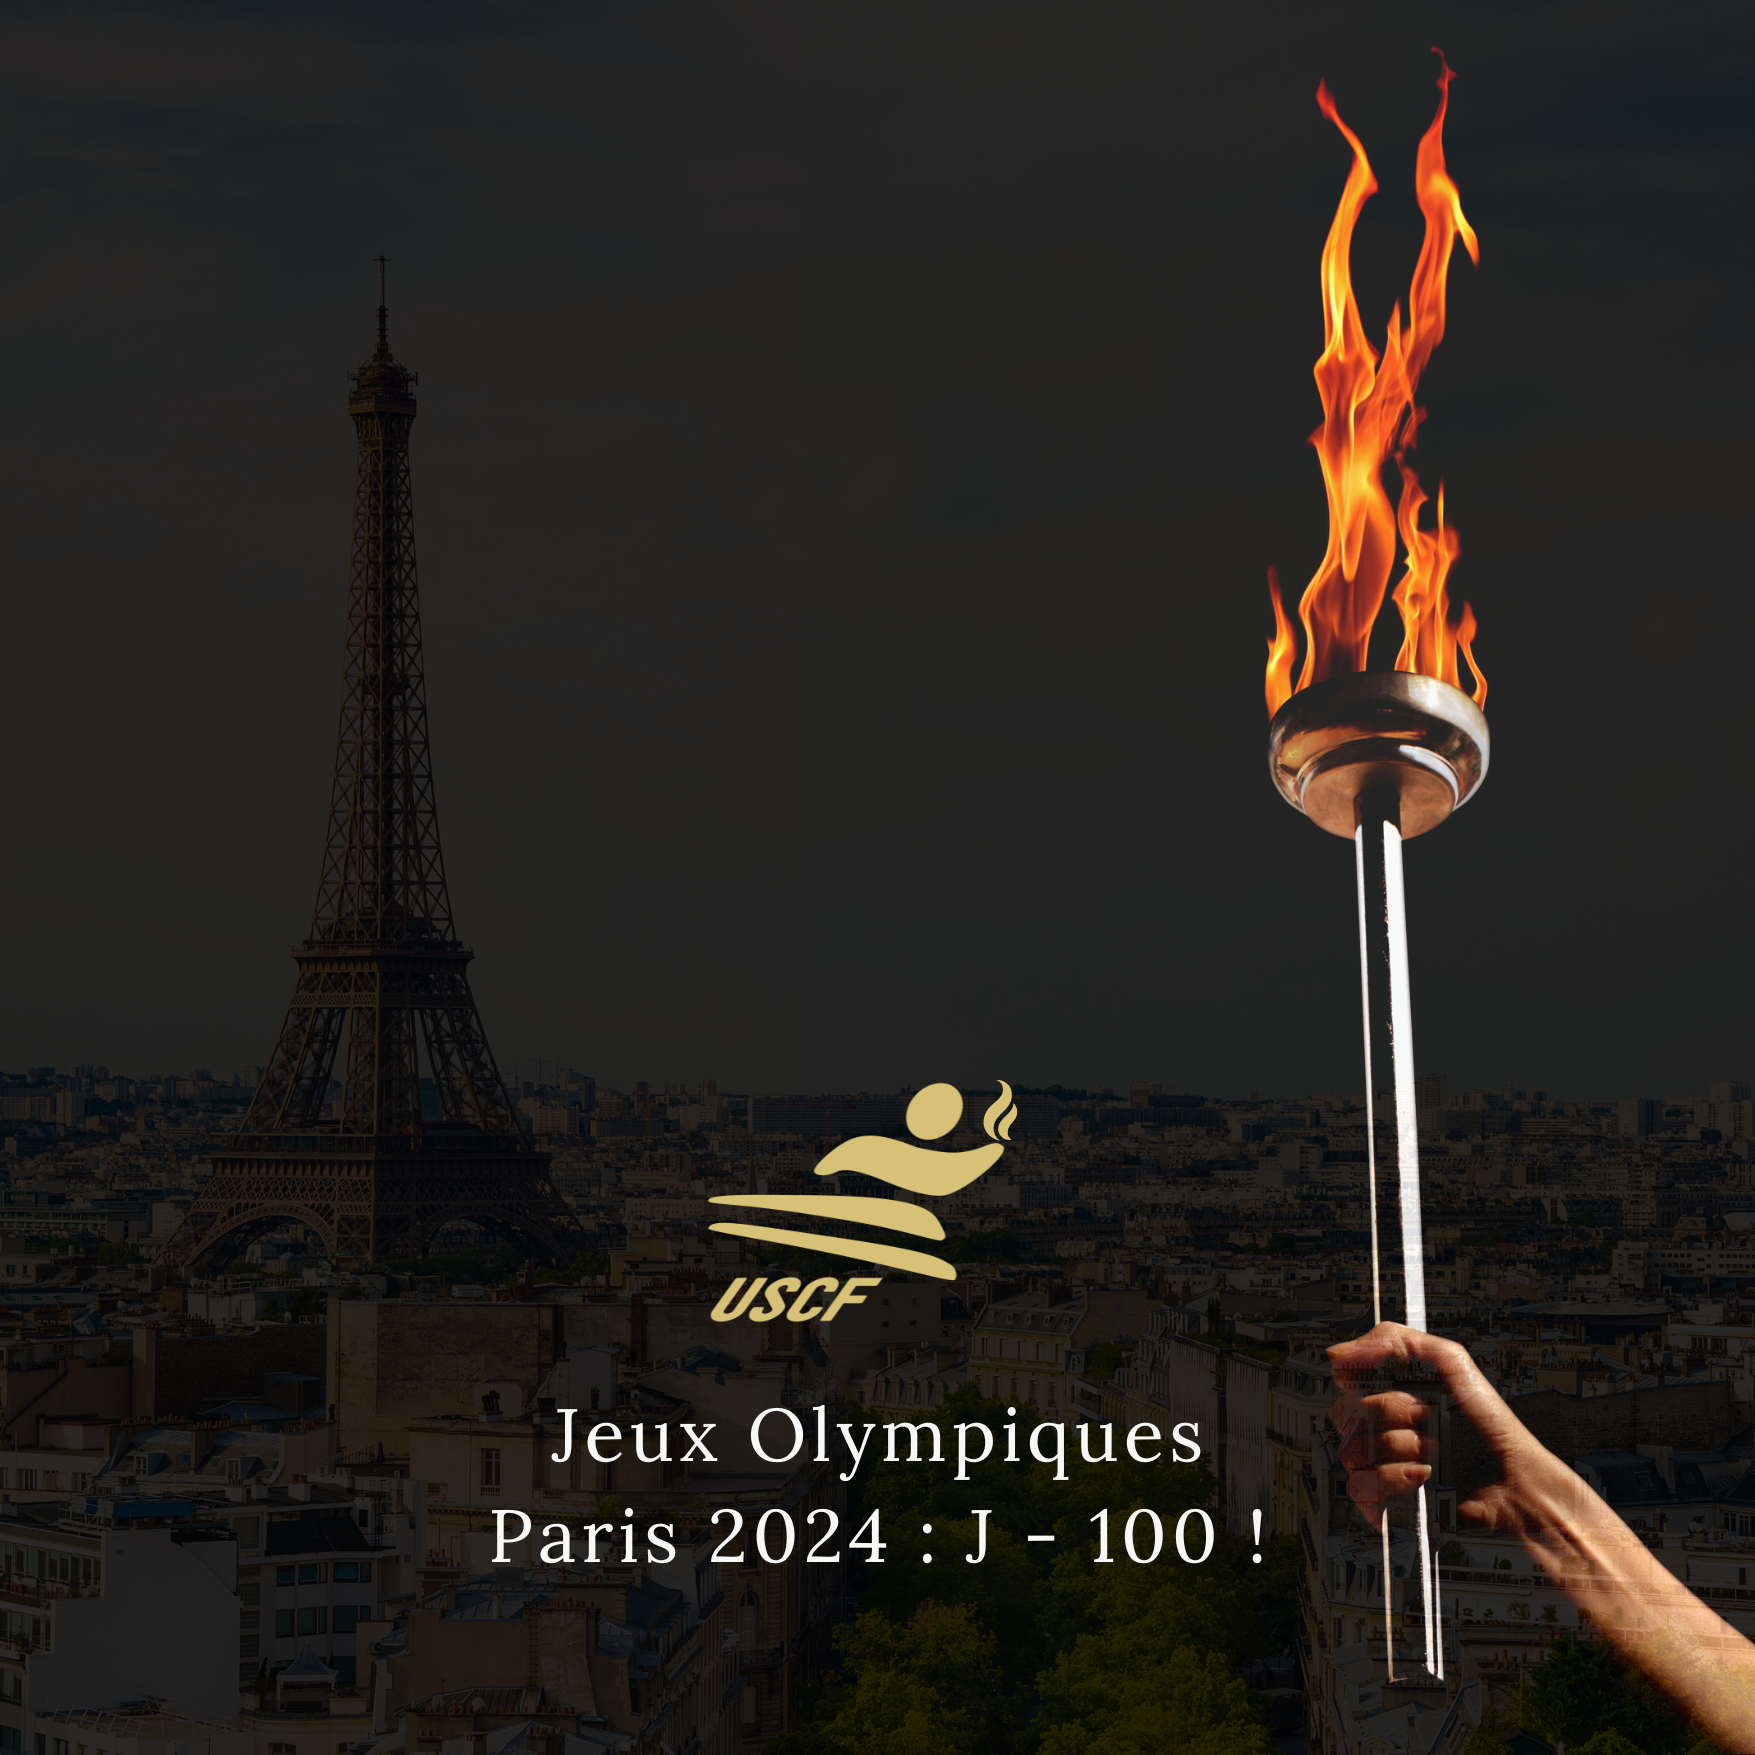 Les Jeux Olympiques Paris 2024 : c'est dans 100 jours !